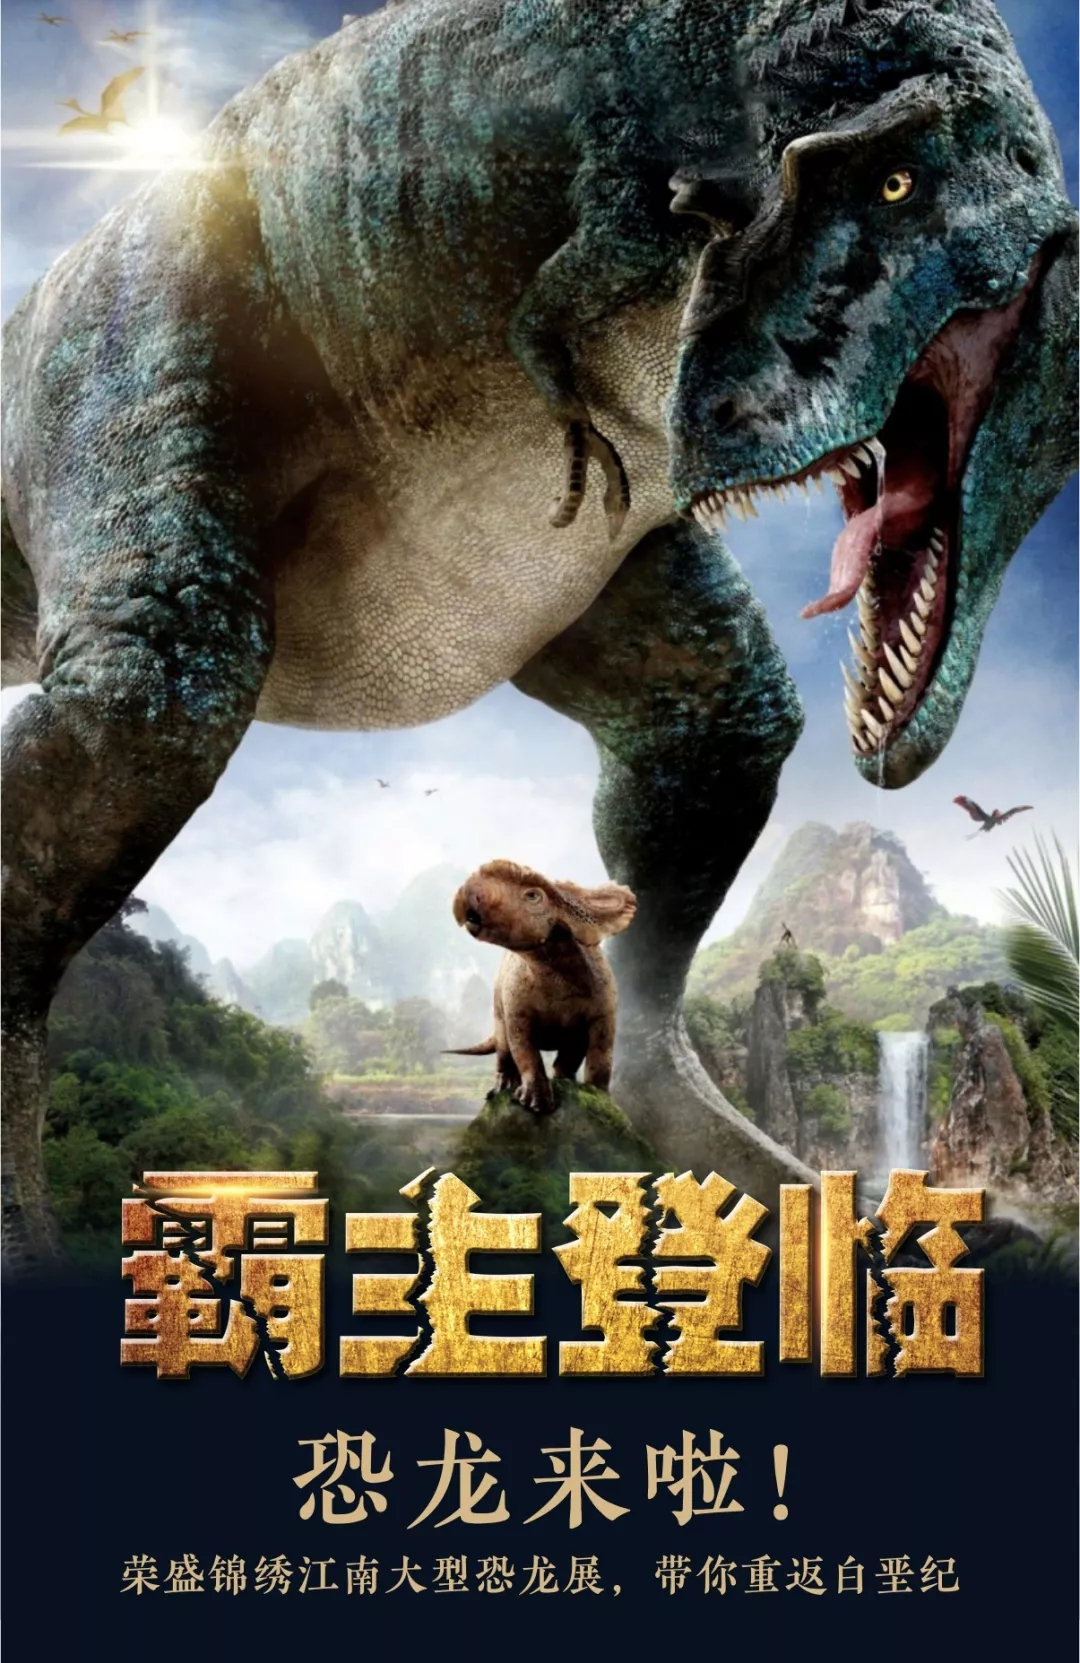 恐龙来啦！荣盛锦绣江南大型恐龙展，带你重返白垩纪！